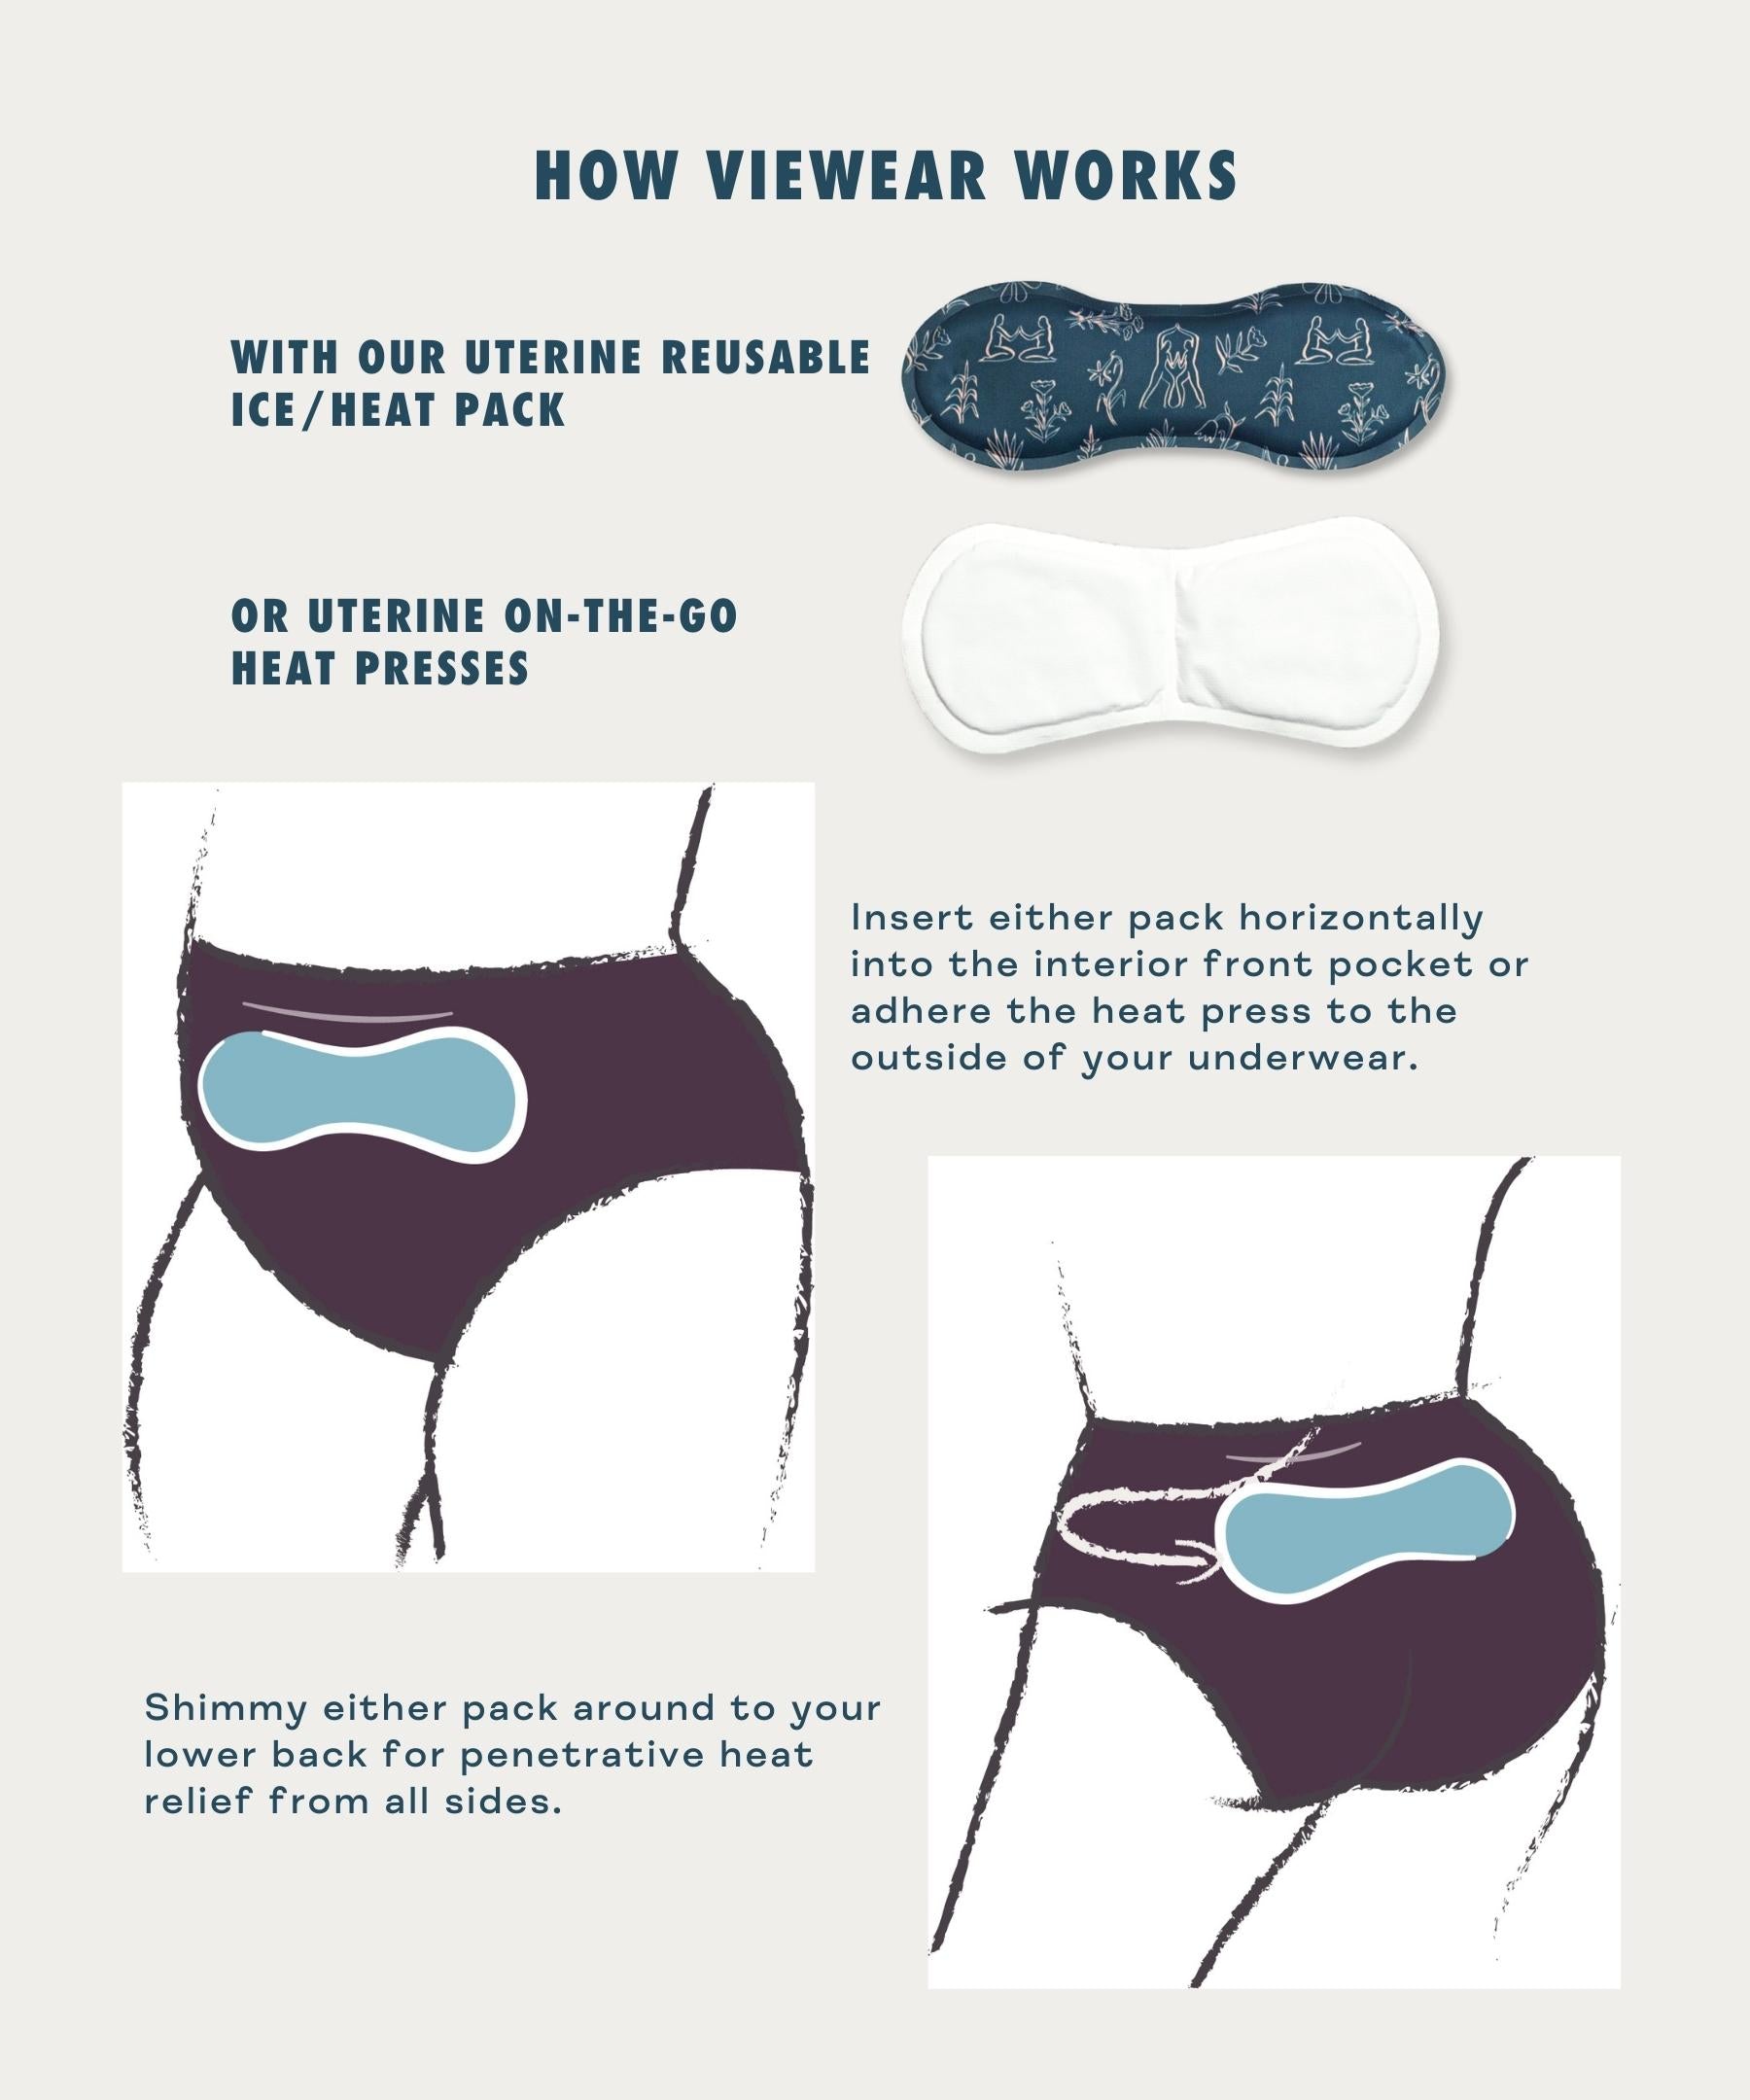 Gynecologist-Approved Underwear — Best Underwear for Your Health